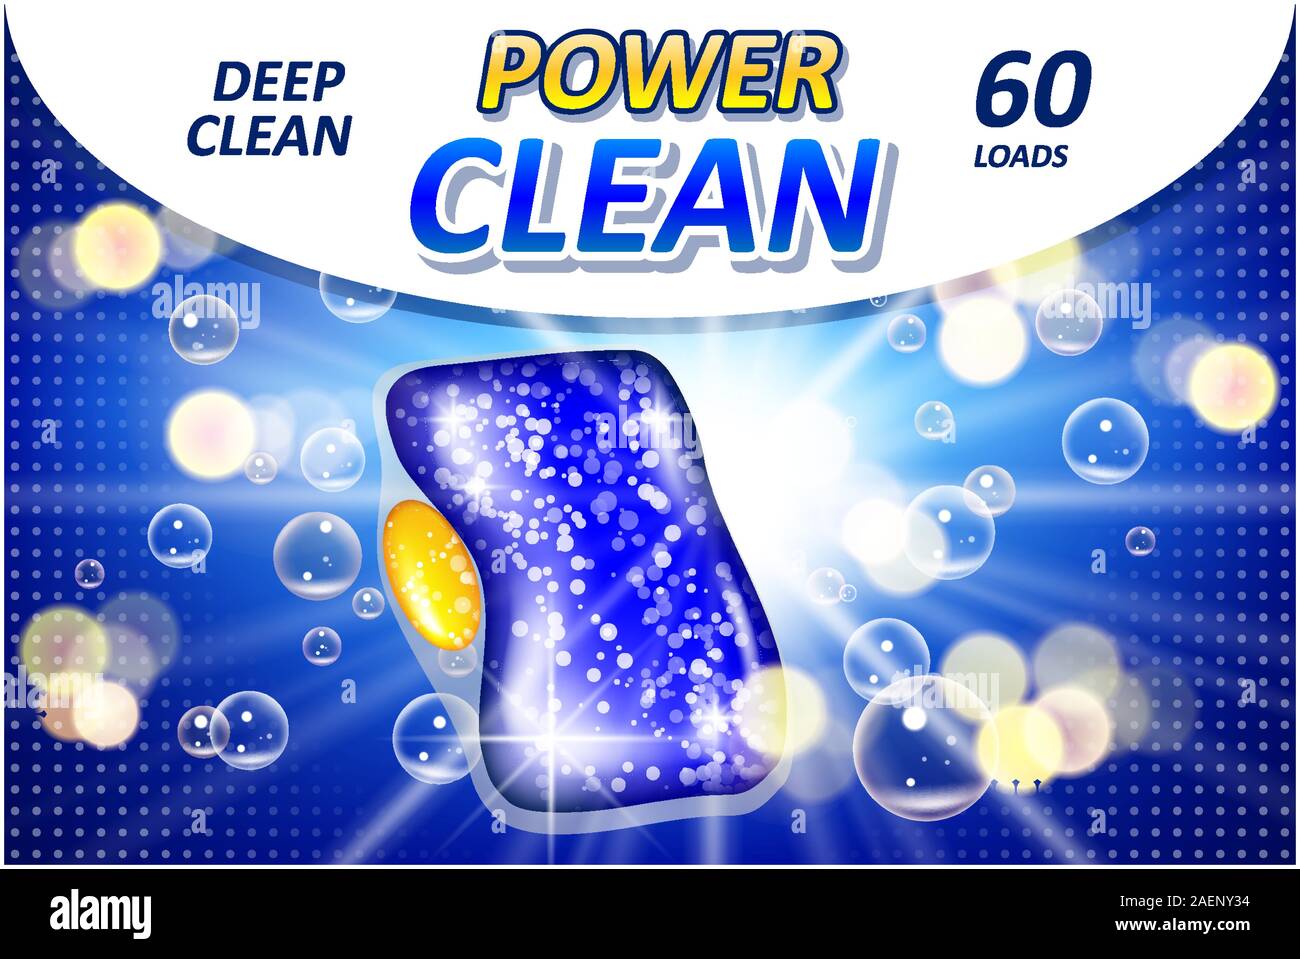 Tablette pour lave-vaisselle annonces de savon. Détergent liquide réalistes gel pour lave-vaisselle automatique affiche publicitaire. Illustration 3D de vecteur Illustration de Vecteur